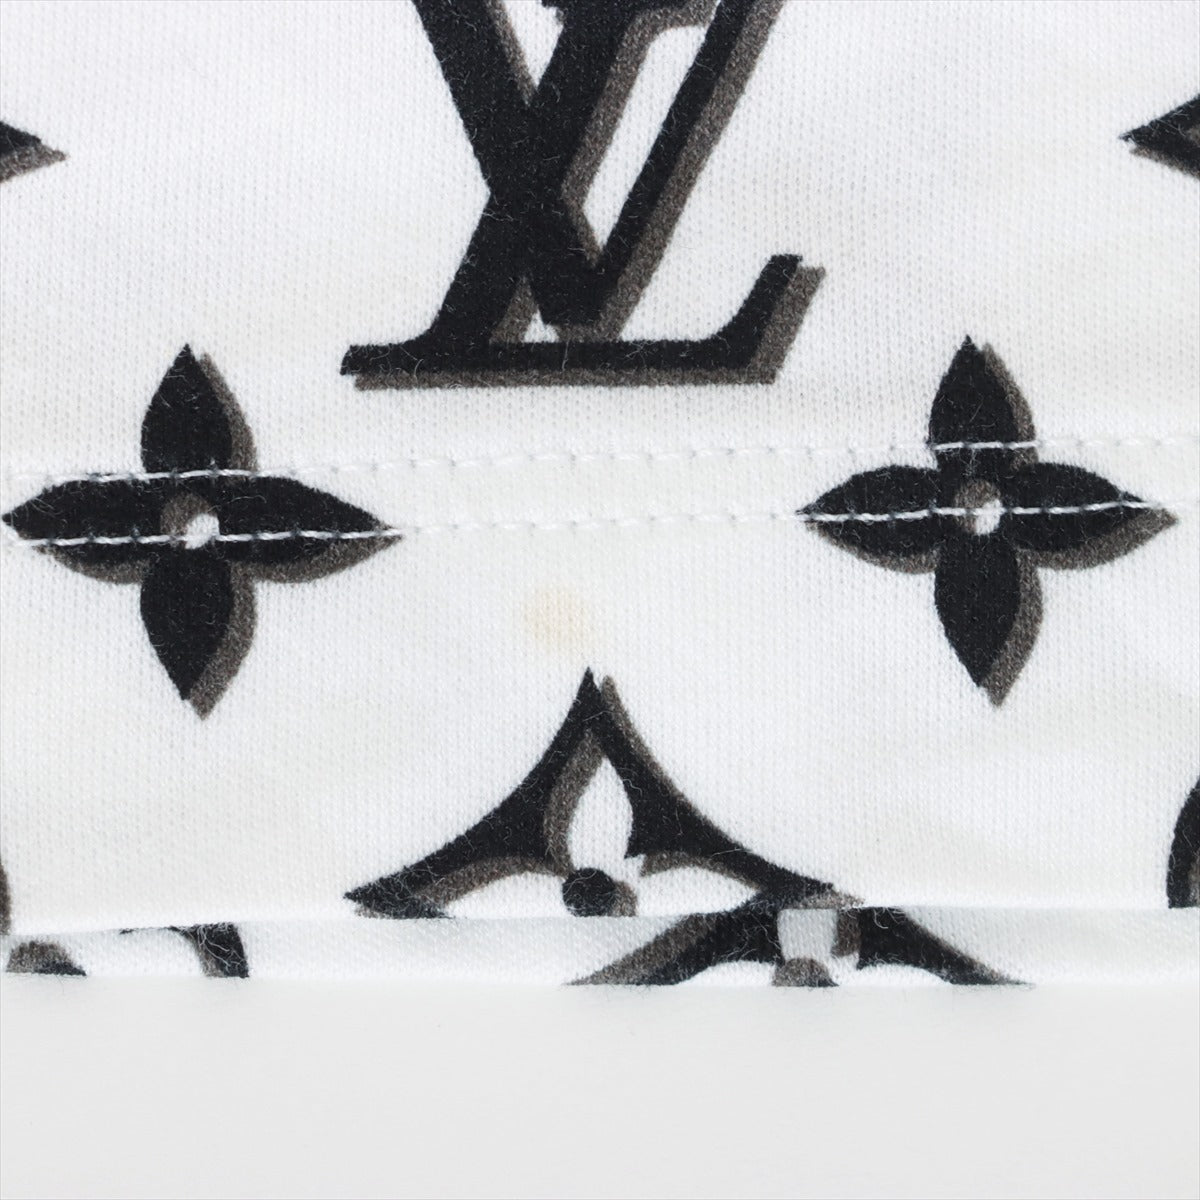 ヴィトン 23AW コットン Tシャツ S レディース ブラック×ホワイト 3Dモノグラム LV サークルチェーン クルーネック RW232